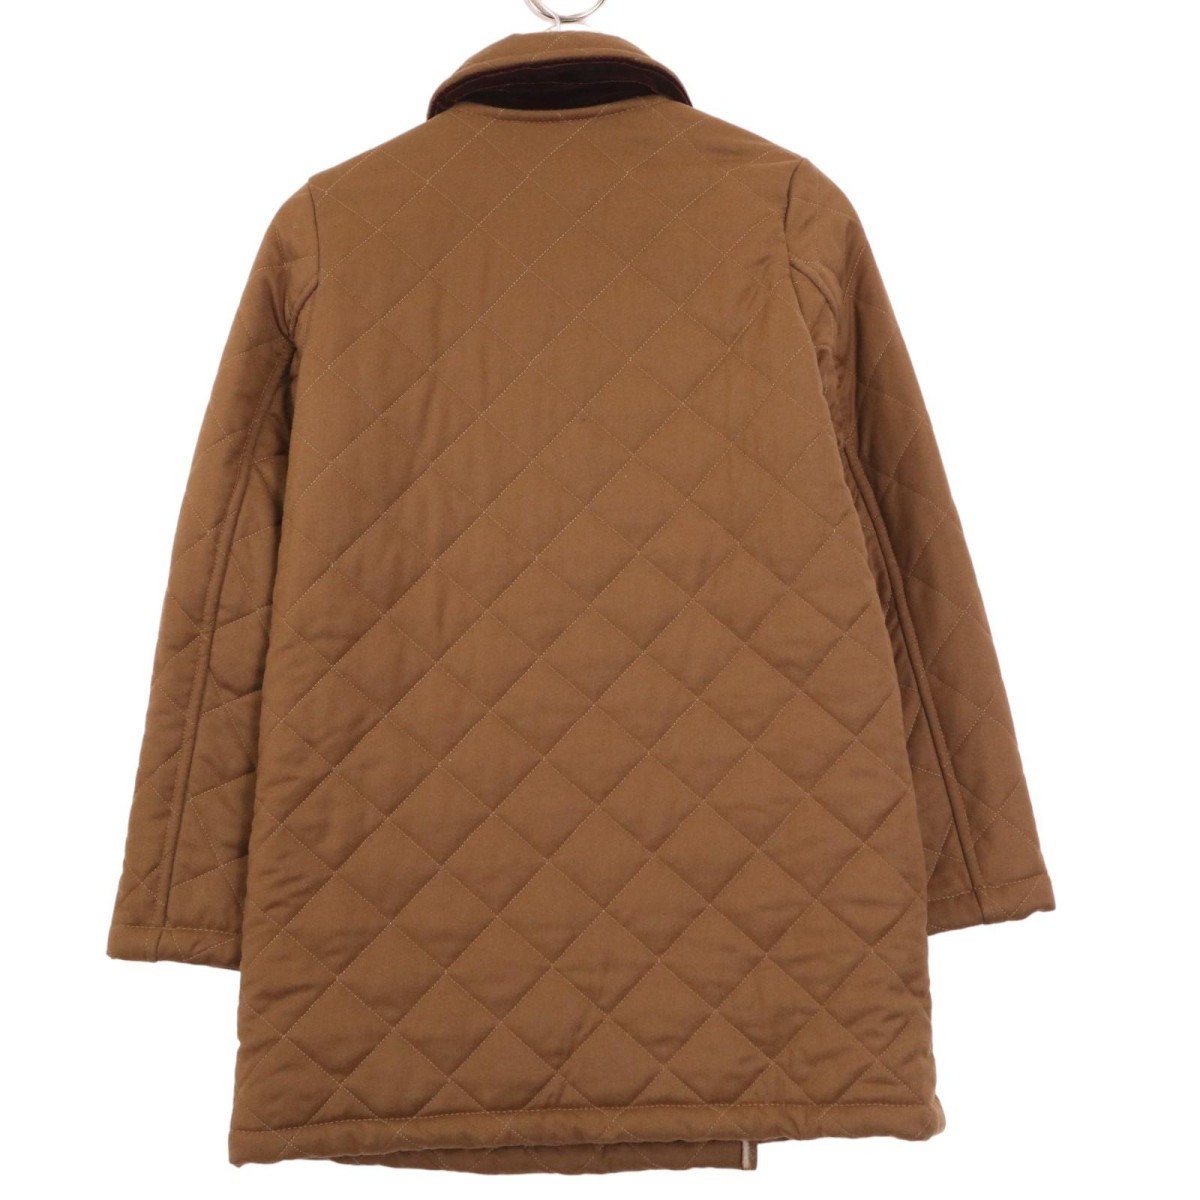 MACKINTOSH Macintosh внутри сторона боа двойной breast стеганое полотно шерстяное пальто указанный размер 36